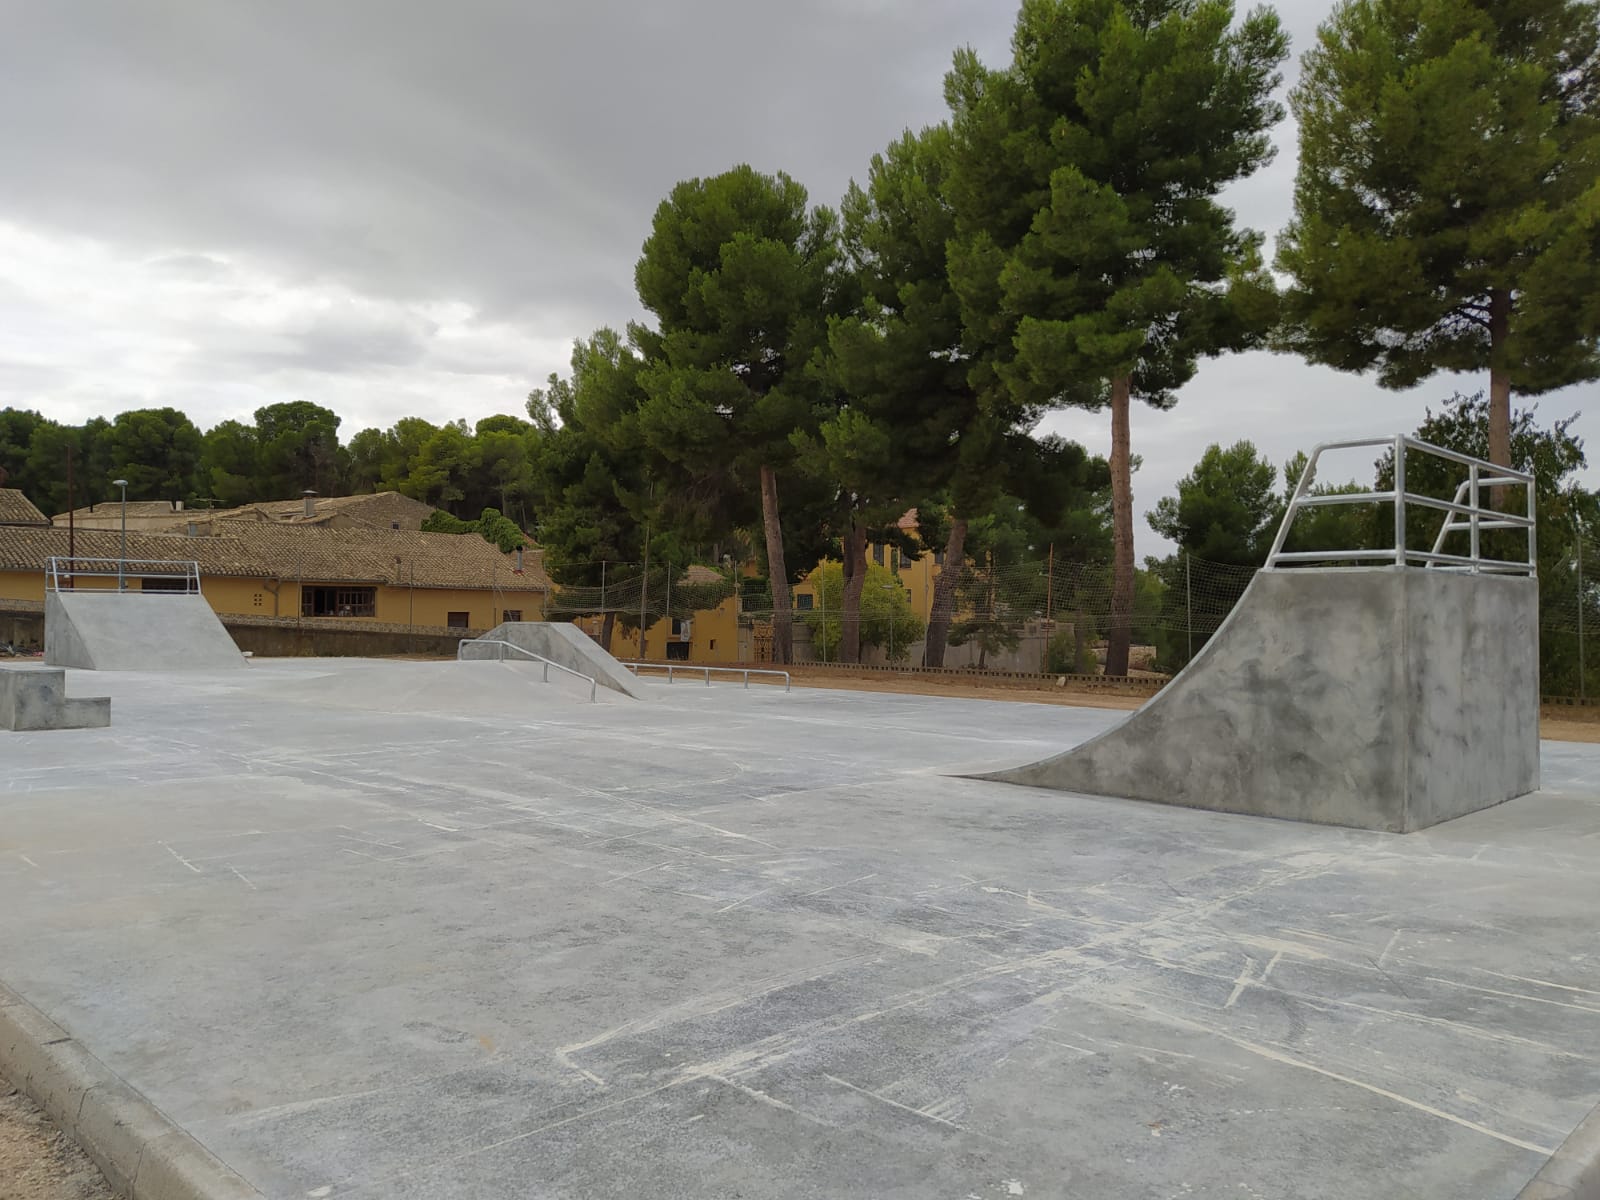 Biar invierte 30.000 euros en la construcción de un skatepark